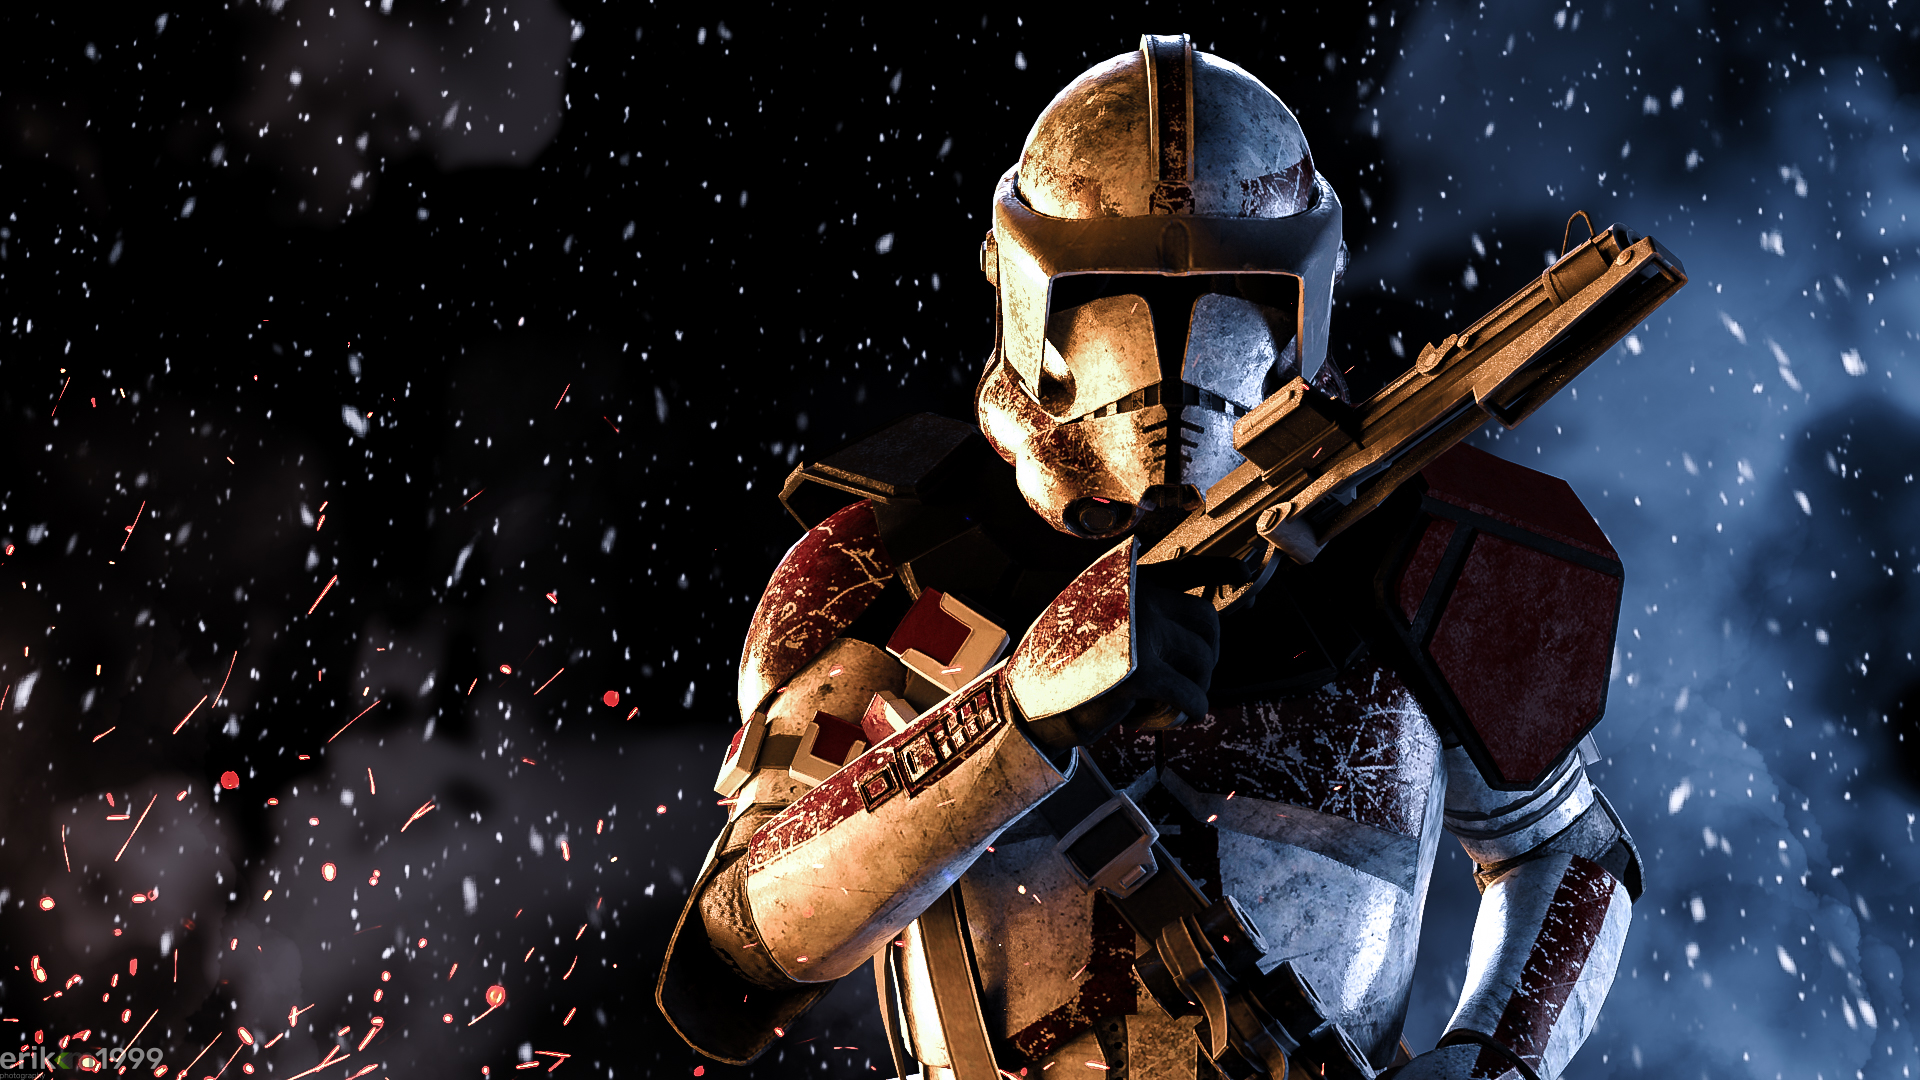 clone-trooper-star-wars-hd-t1.jpg